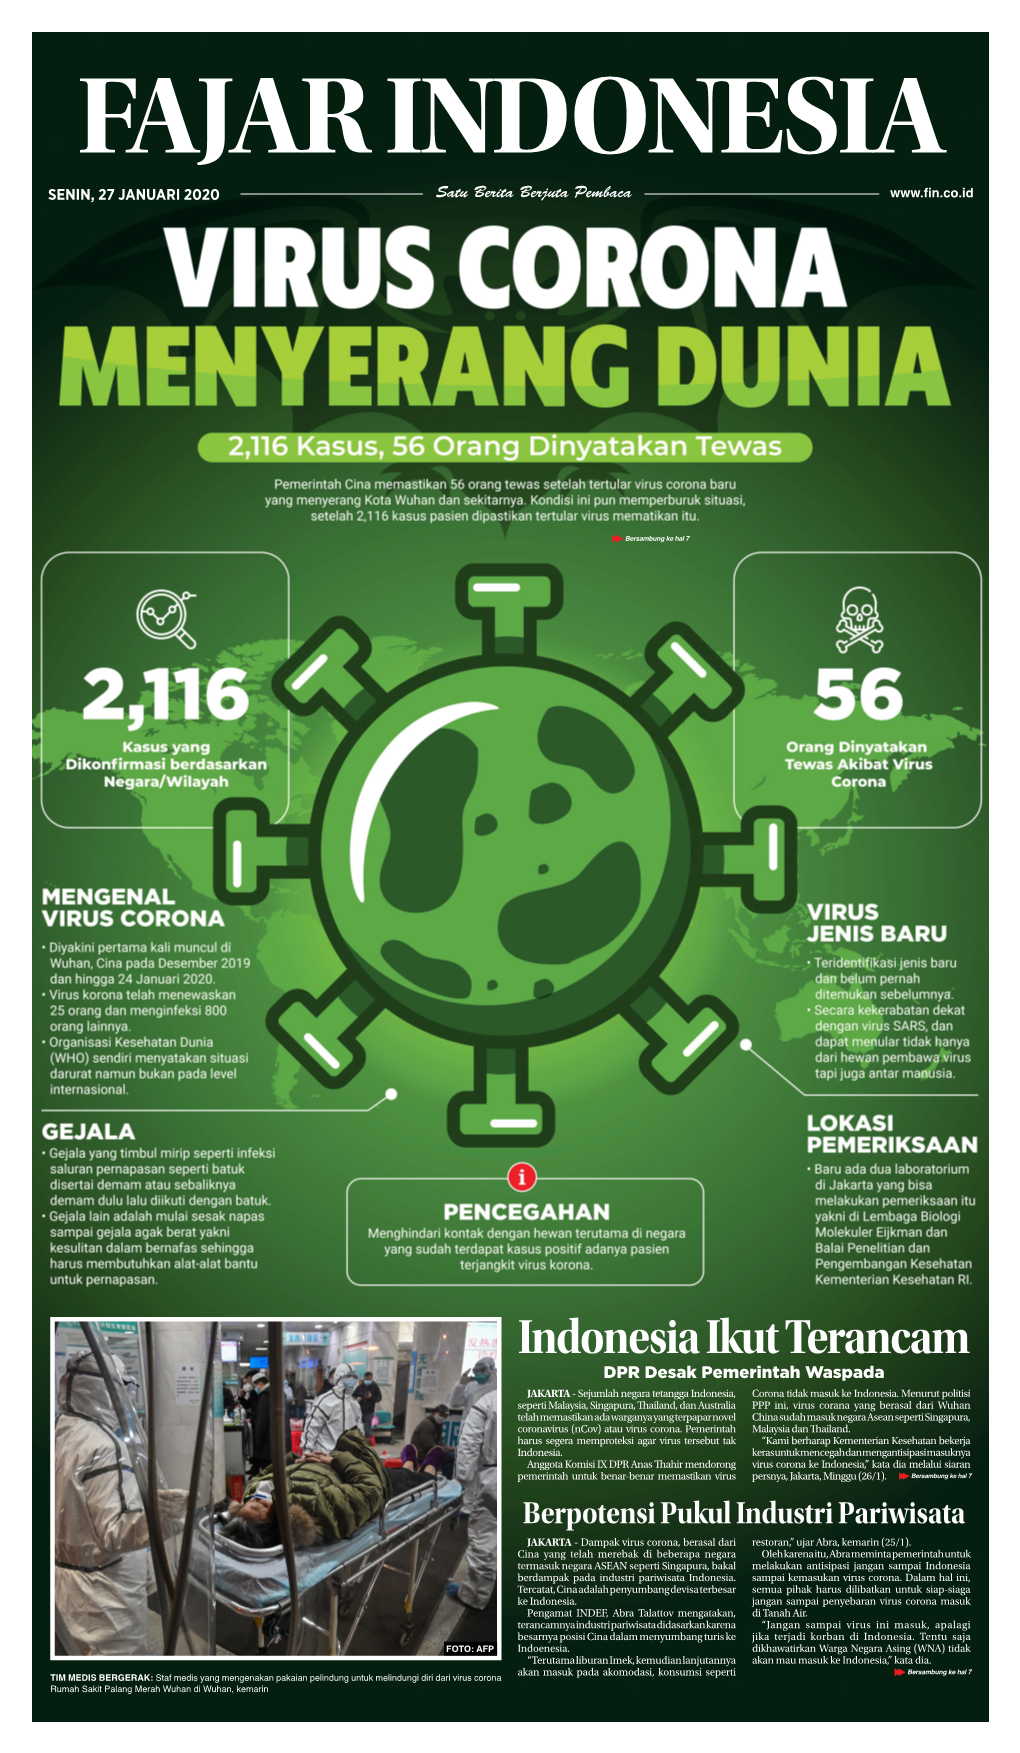 Epaper Fajar Indonesia Network, Senin 27 Januari 2020